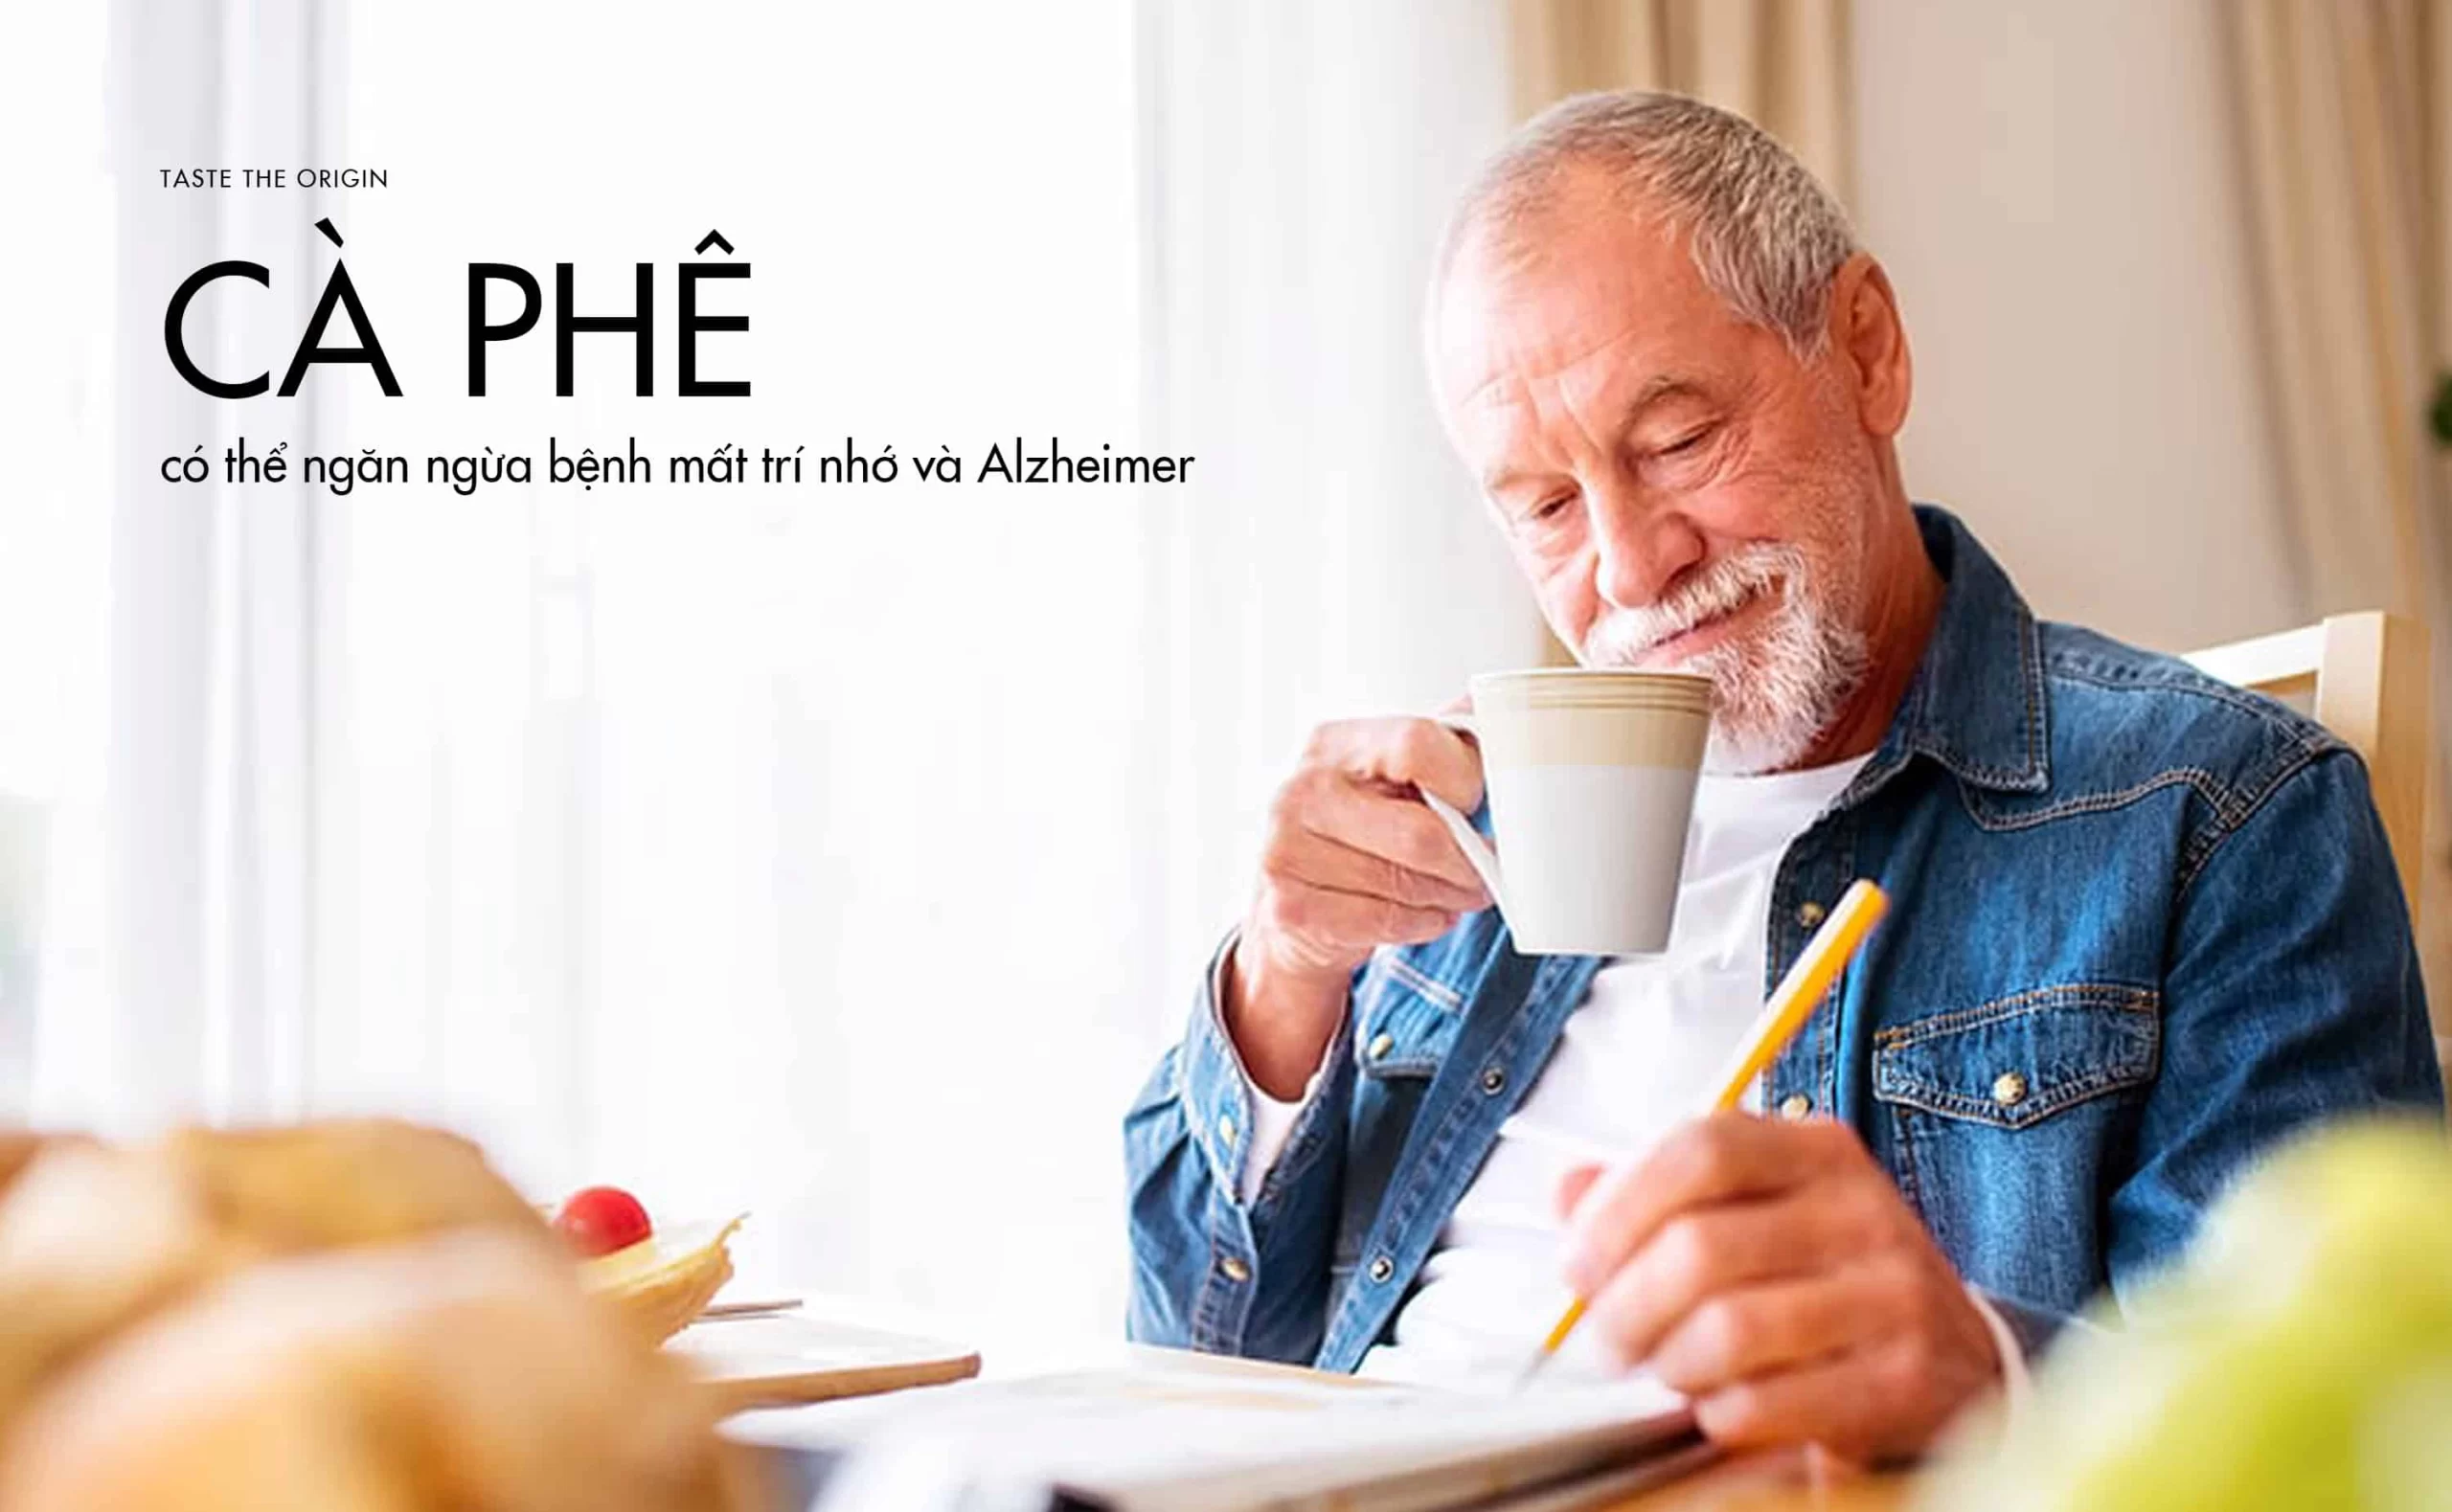 Lợi ích bất ngờ: Uống cà phê mỗi ngày có thể ngăn ngừa bệnh mất trí nhớ và Alzheimer